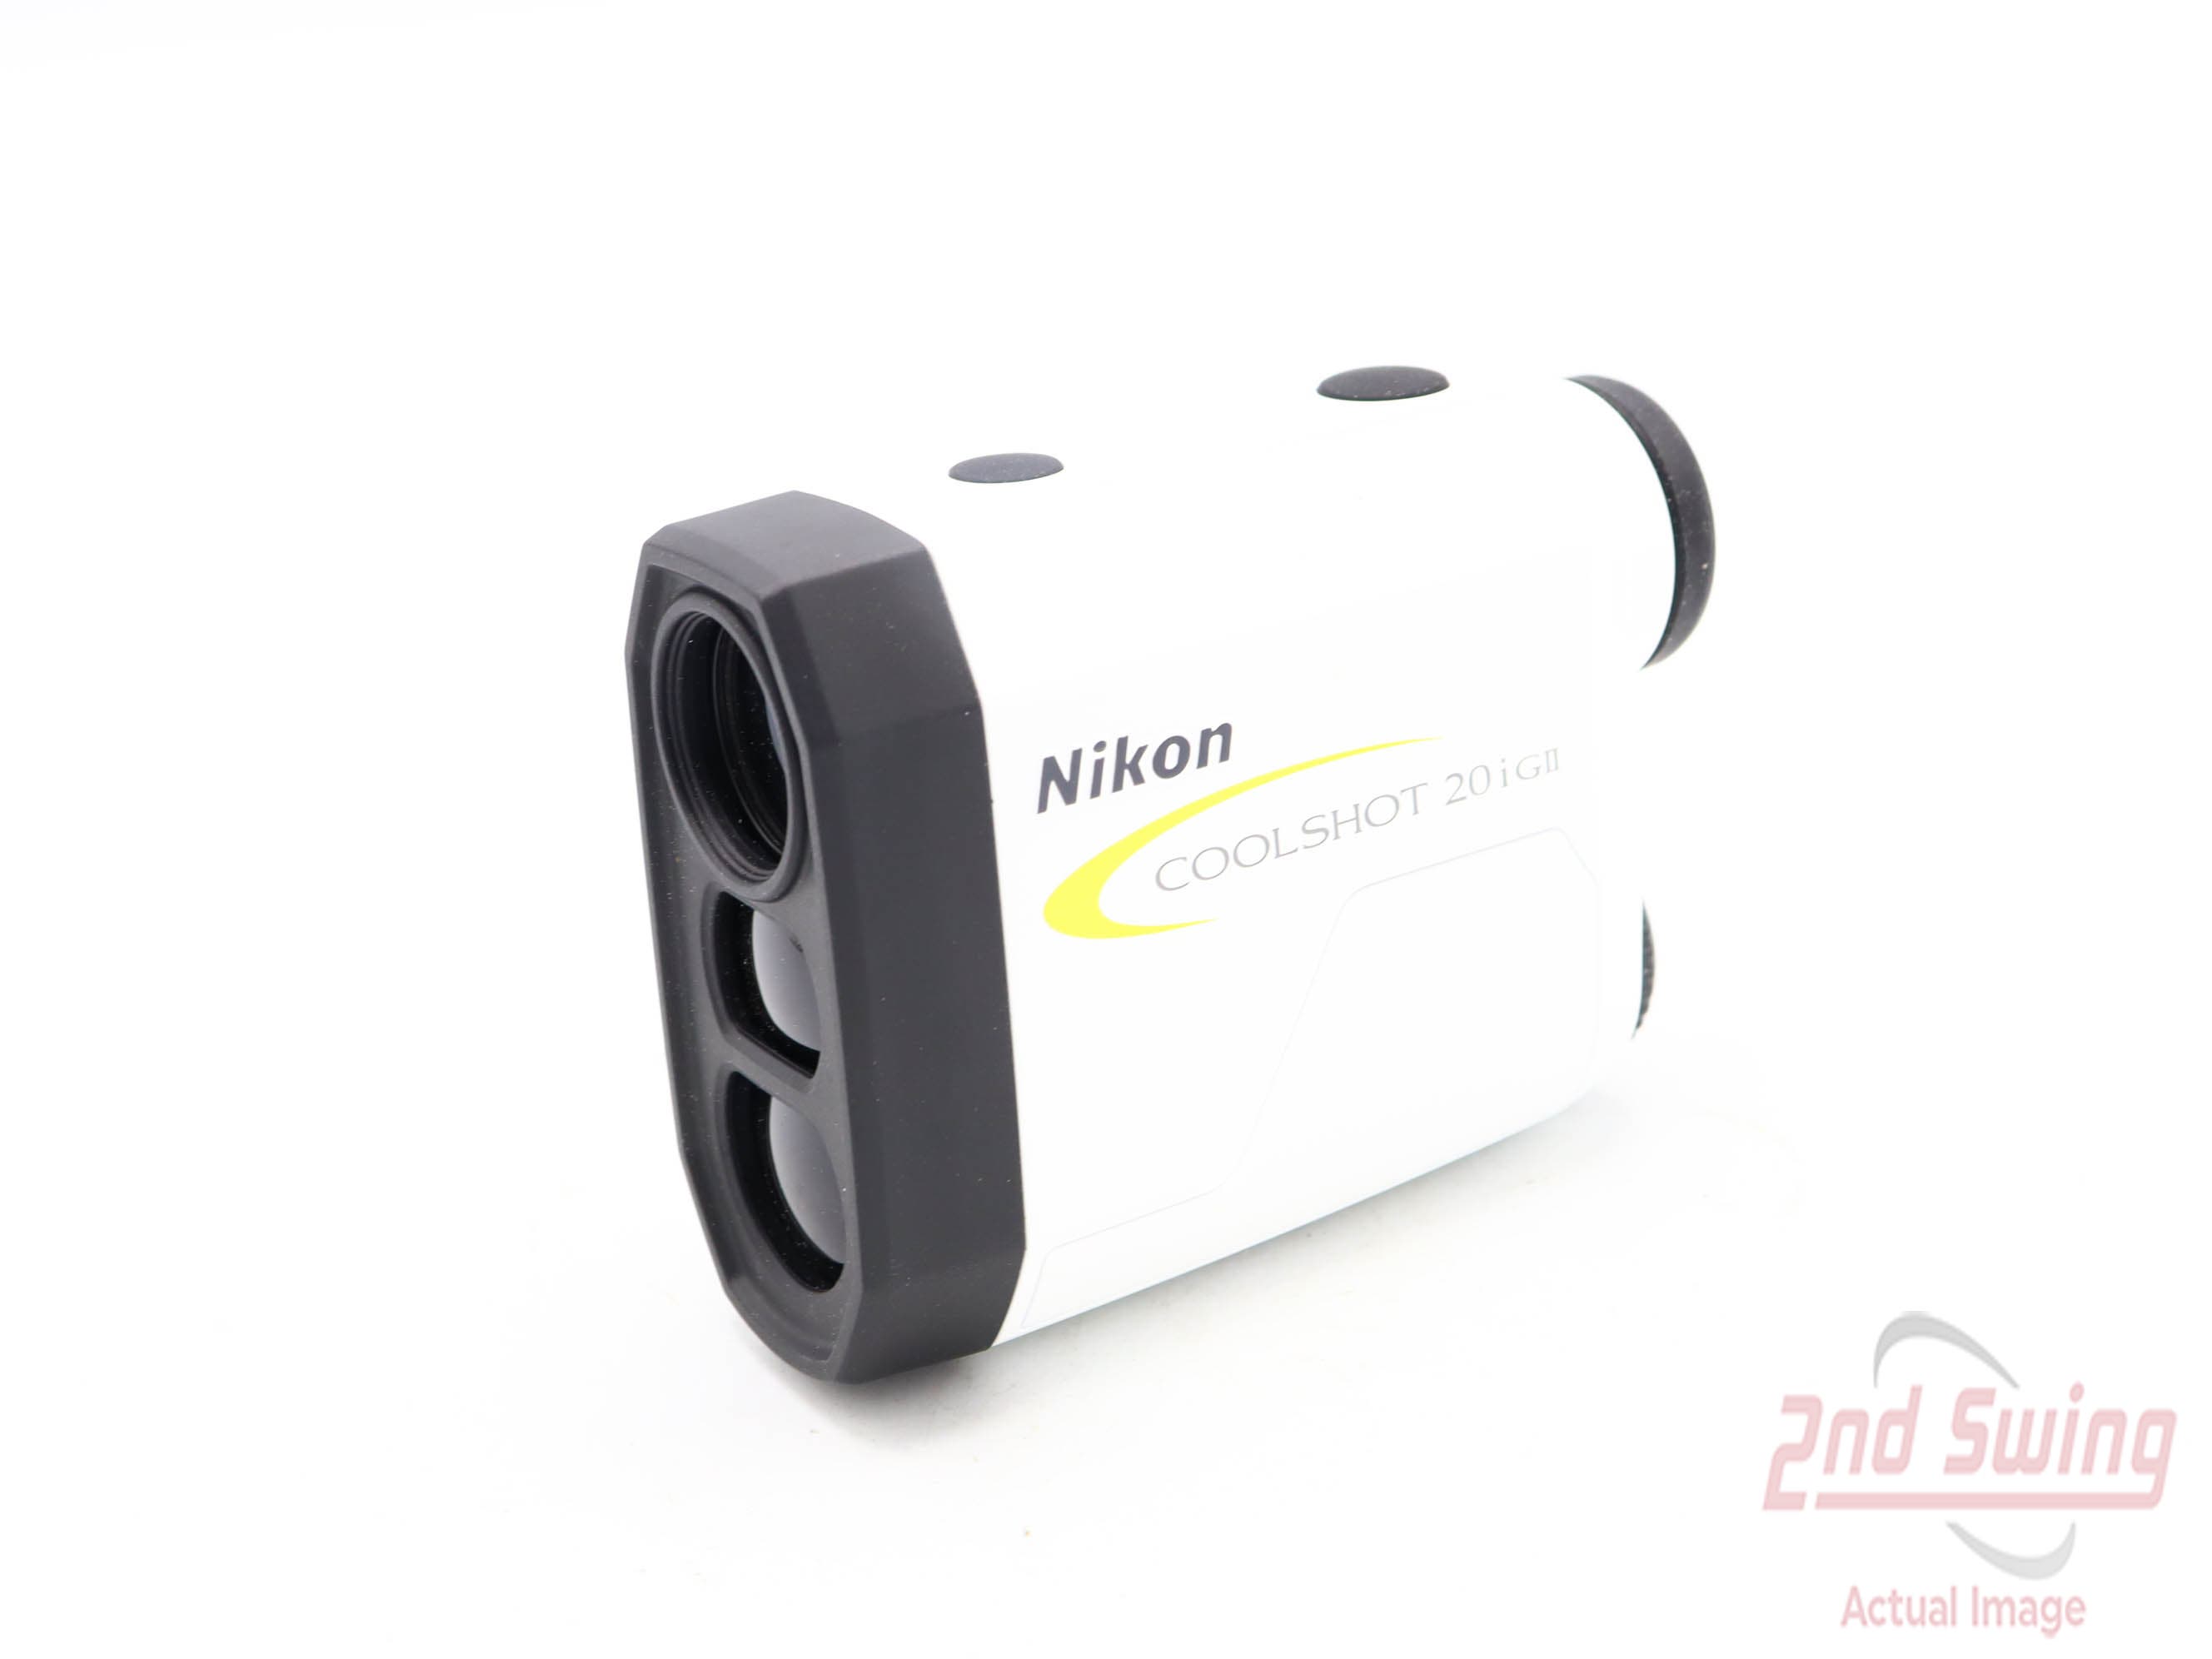 Nikon Coolshot 20i GII Golf GPS & Rangefinders (D-32330157001)